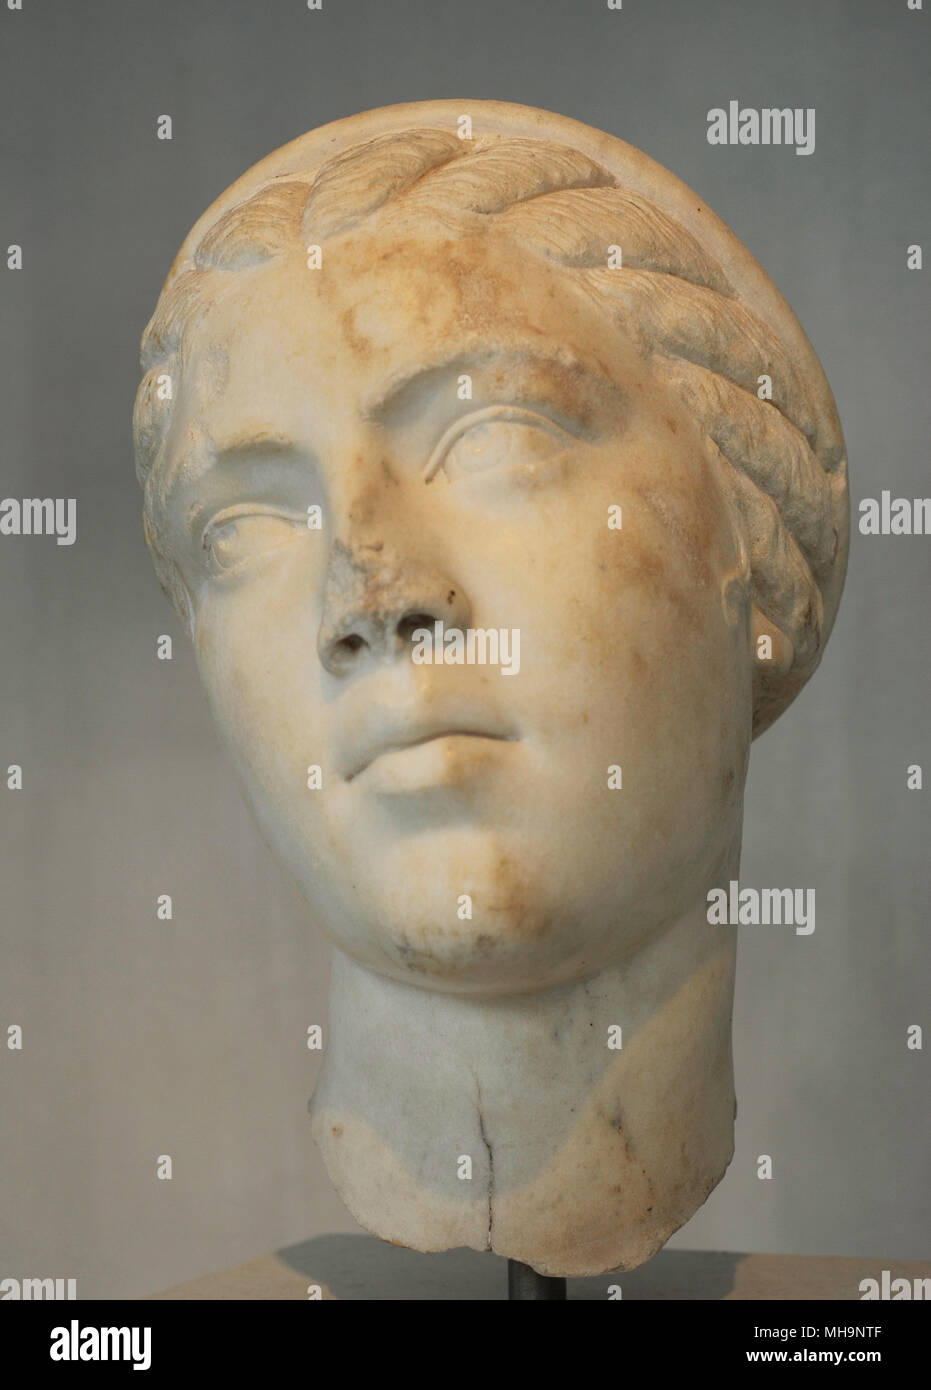 Fulvia Plautilla (C. 185-211). Die einzige Frau des Römischen Kaiser Caracalla. Se verbannt wurde und eventurally getötet. Porträt. Späten 2. bis frühen 3. Jahrhundert n. Akropolis Museum. Athen. Griechenland. Stockfoto